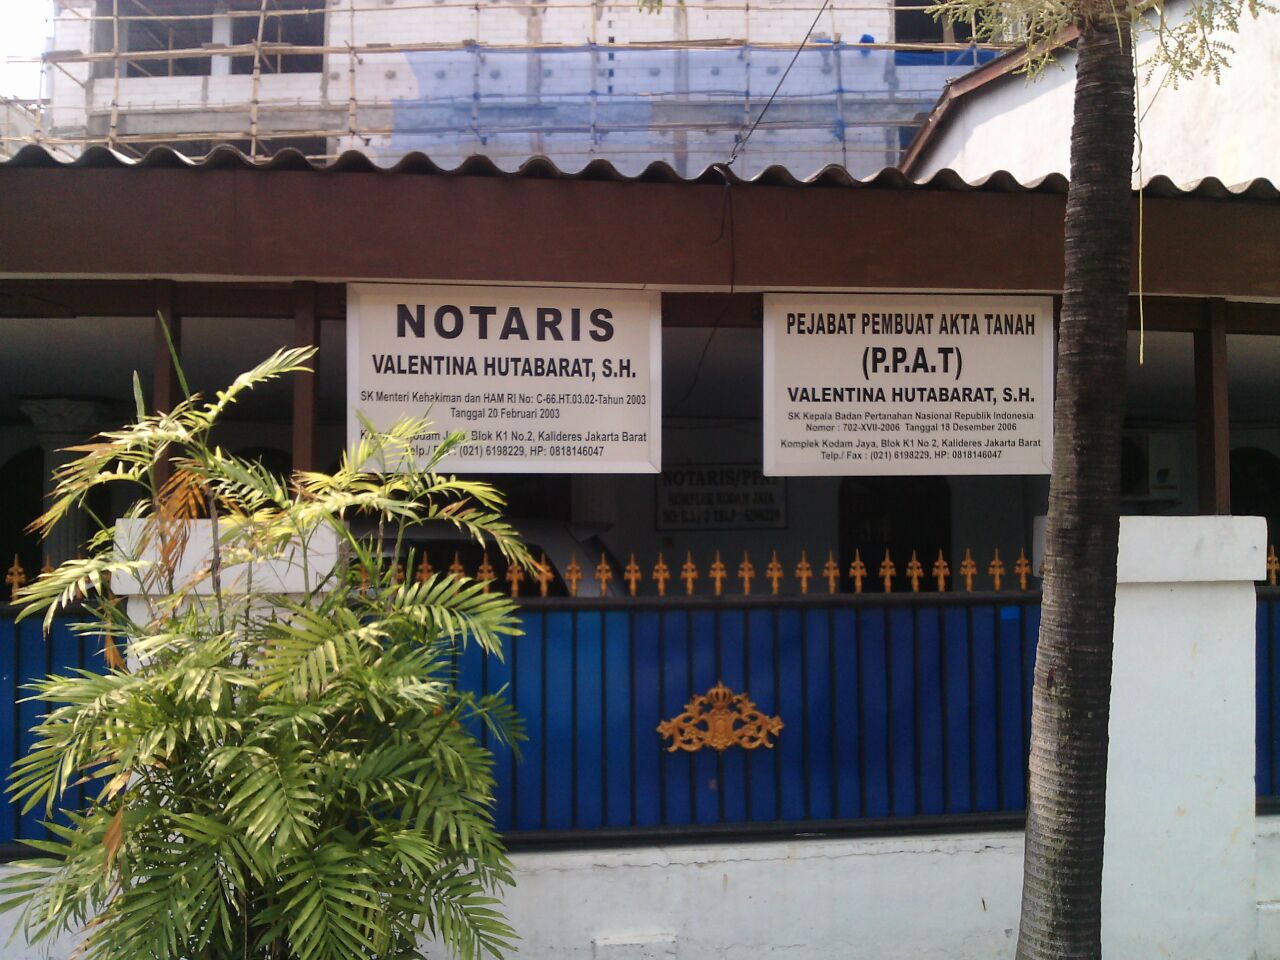 Kantor Notaris & Ppat Valentina Hutabarat, Sh Photo